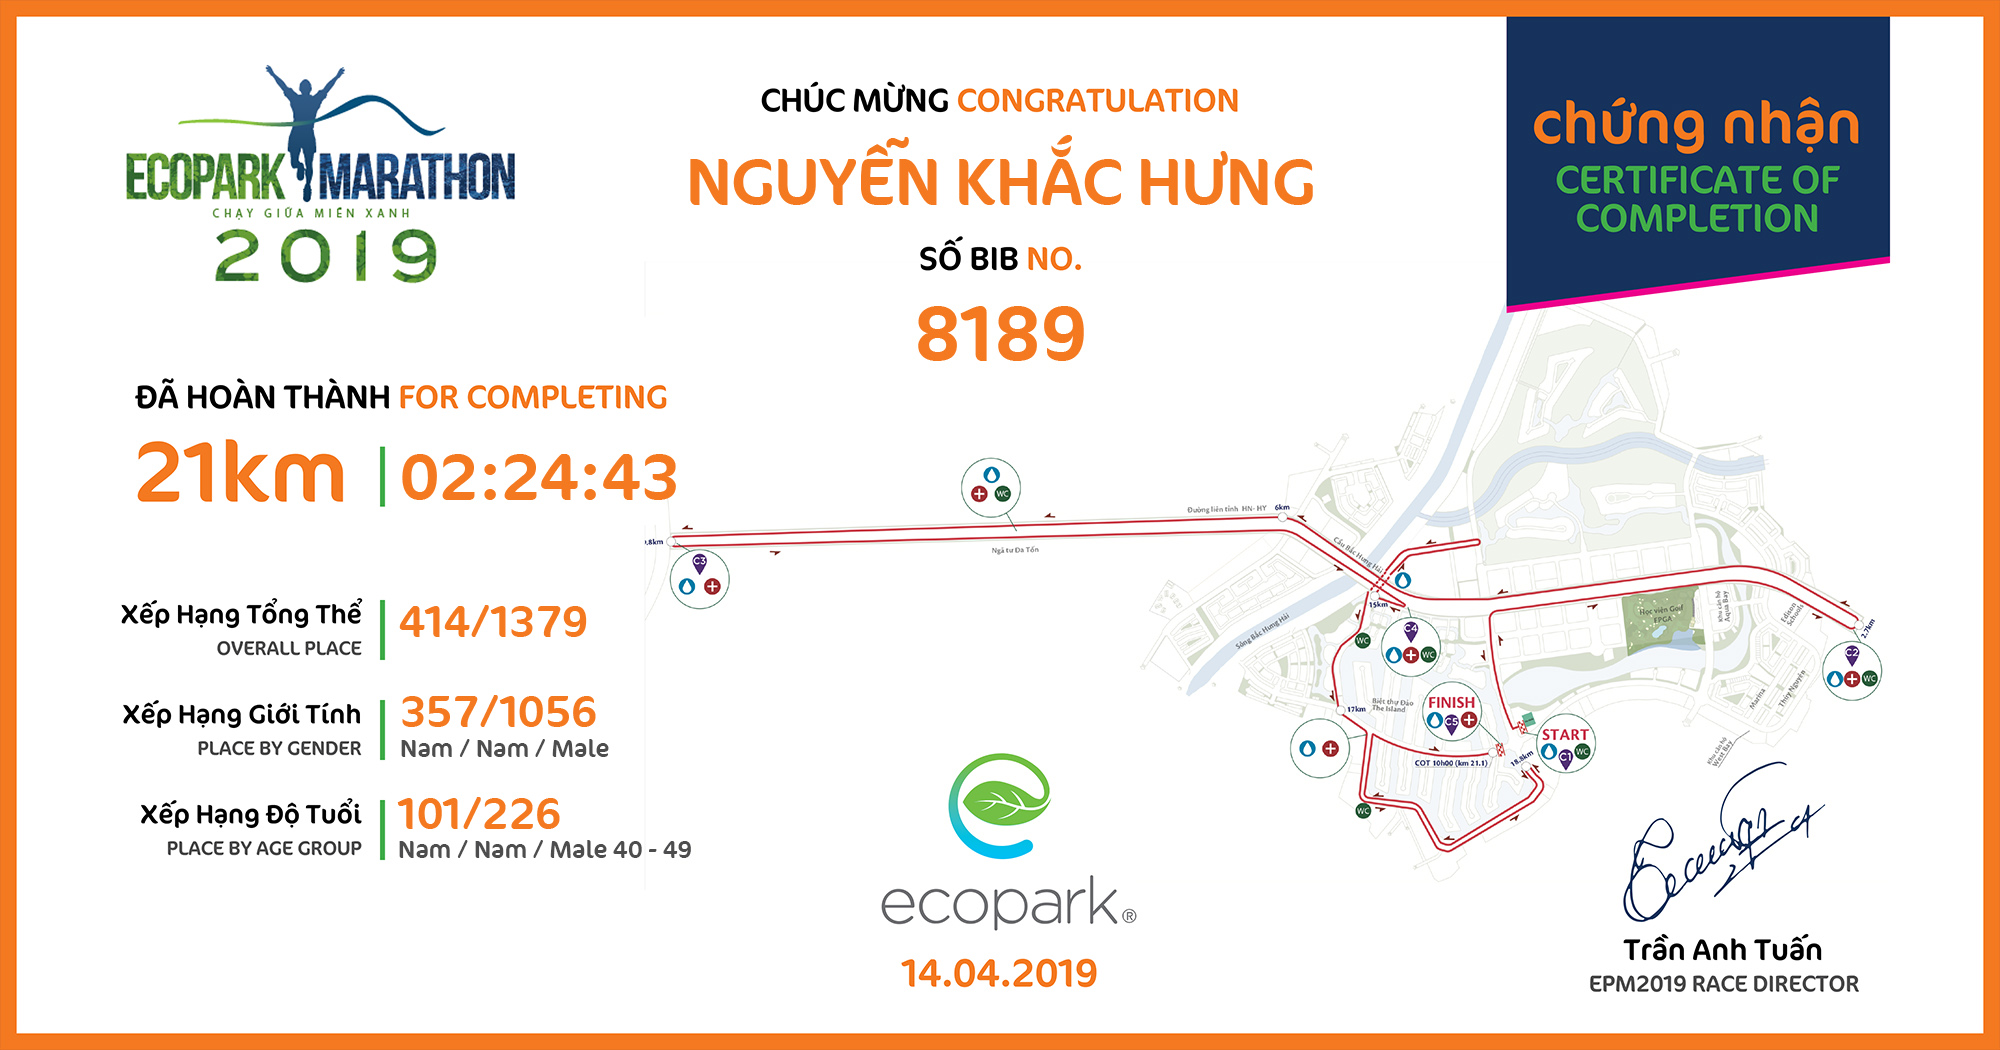 8189 - Nguyễn Khắc Hưng